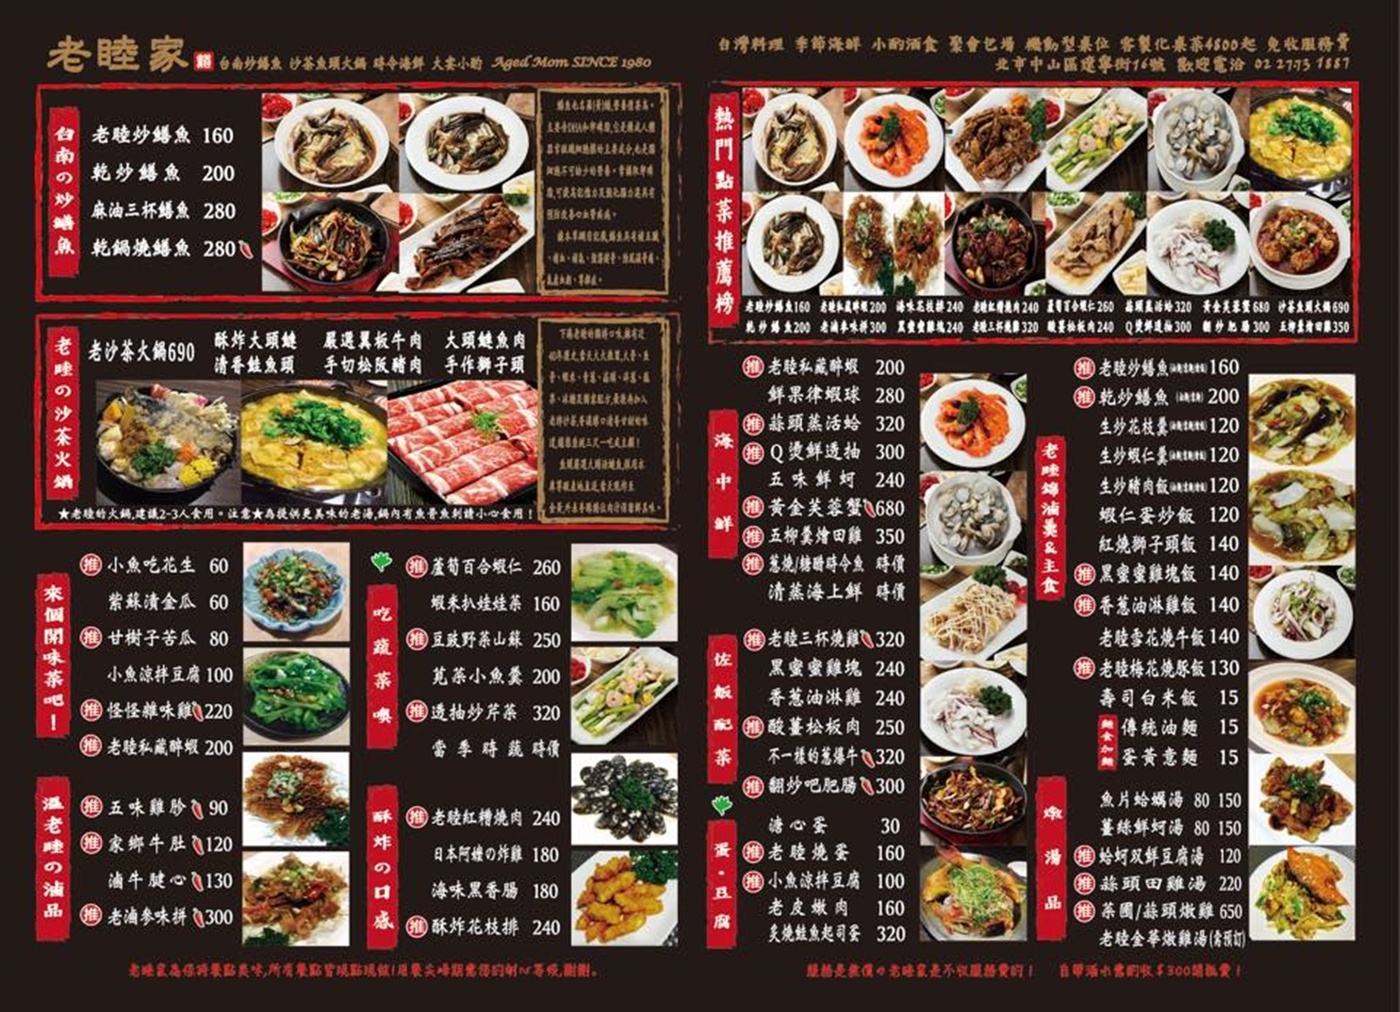 中山區美食,台北 好吃鱔魚,台北 聚餐,台北美食,砂鍋魚頭,老睦家